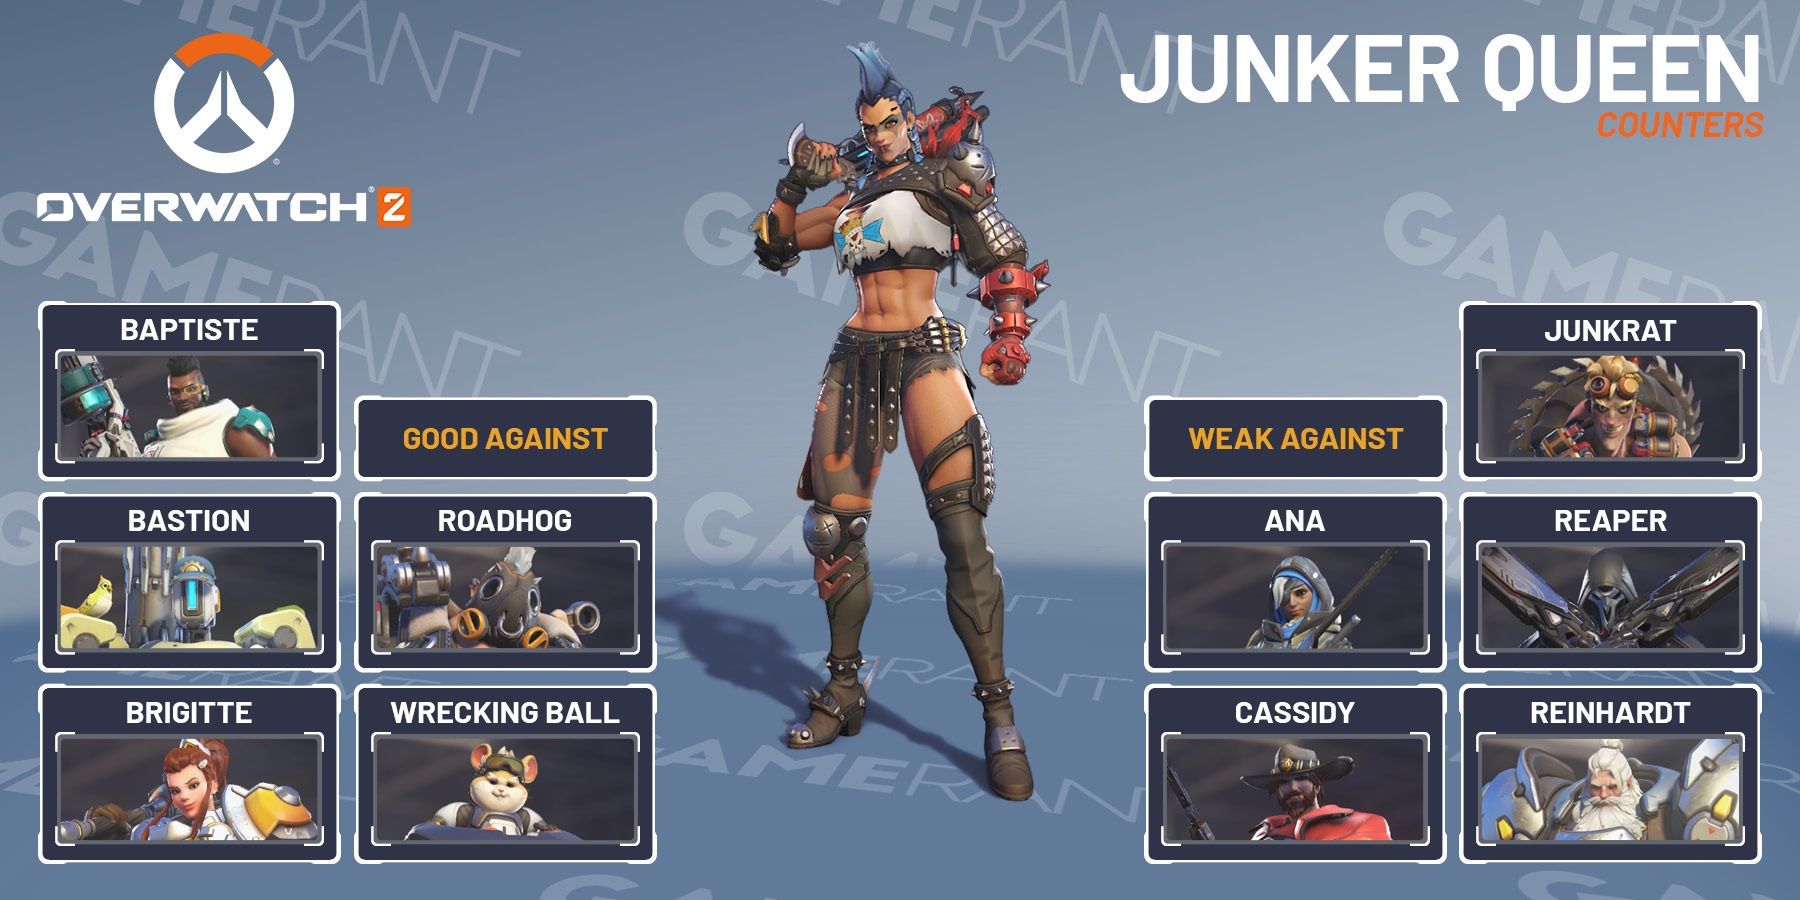 Overwatch 2 Junker Queen Strength And Weakness